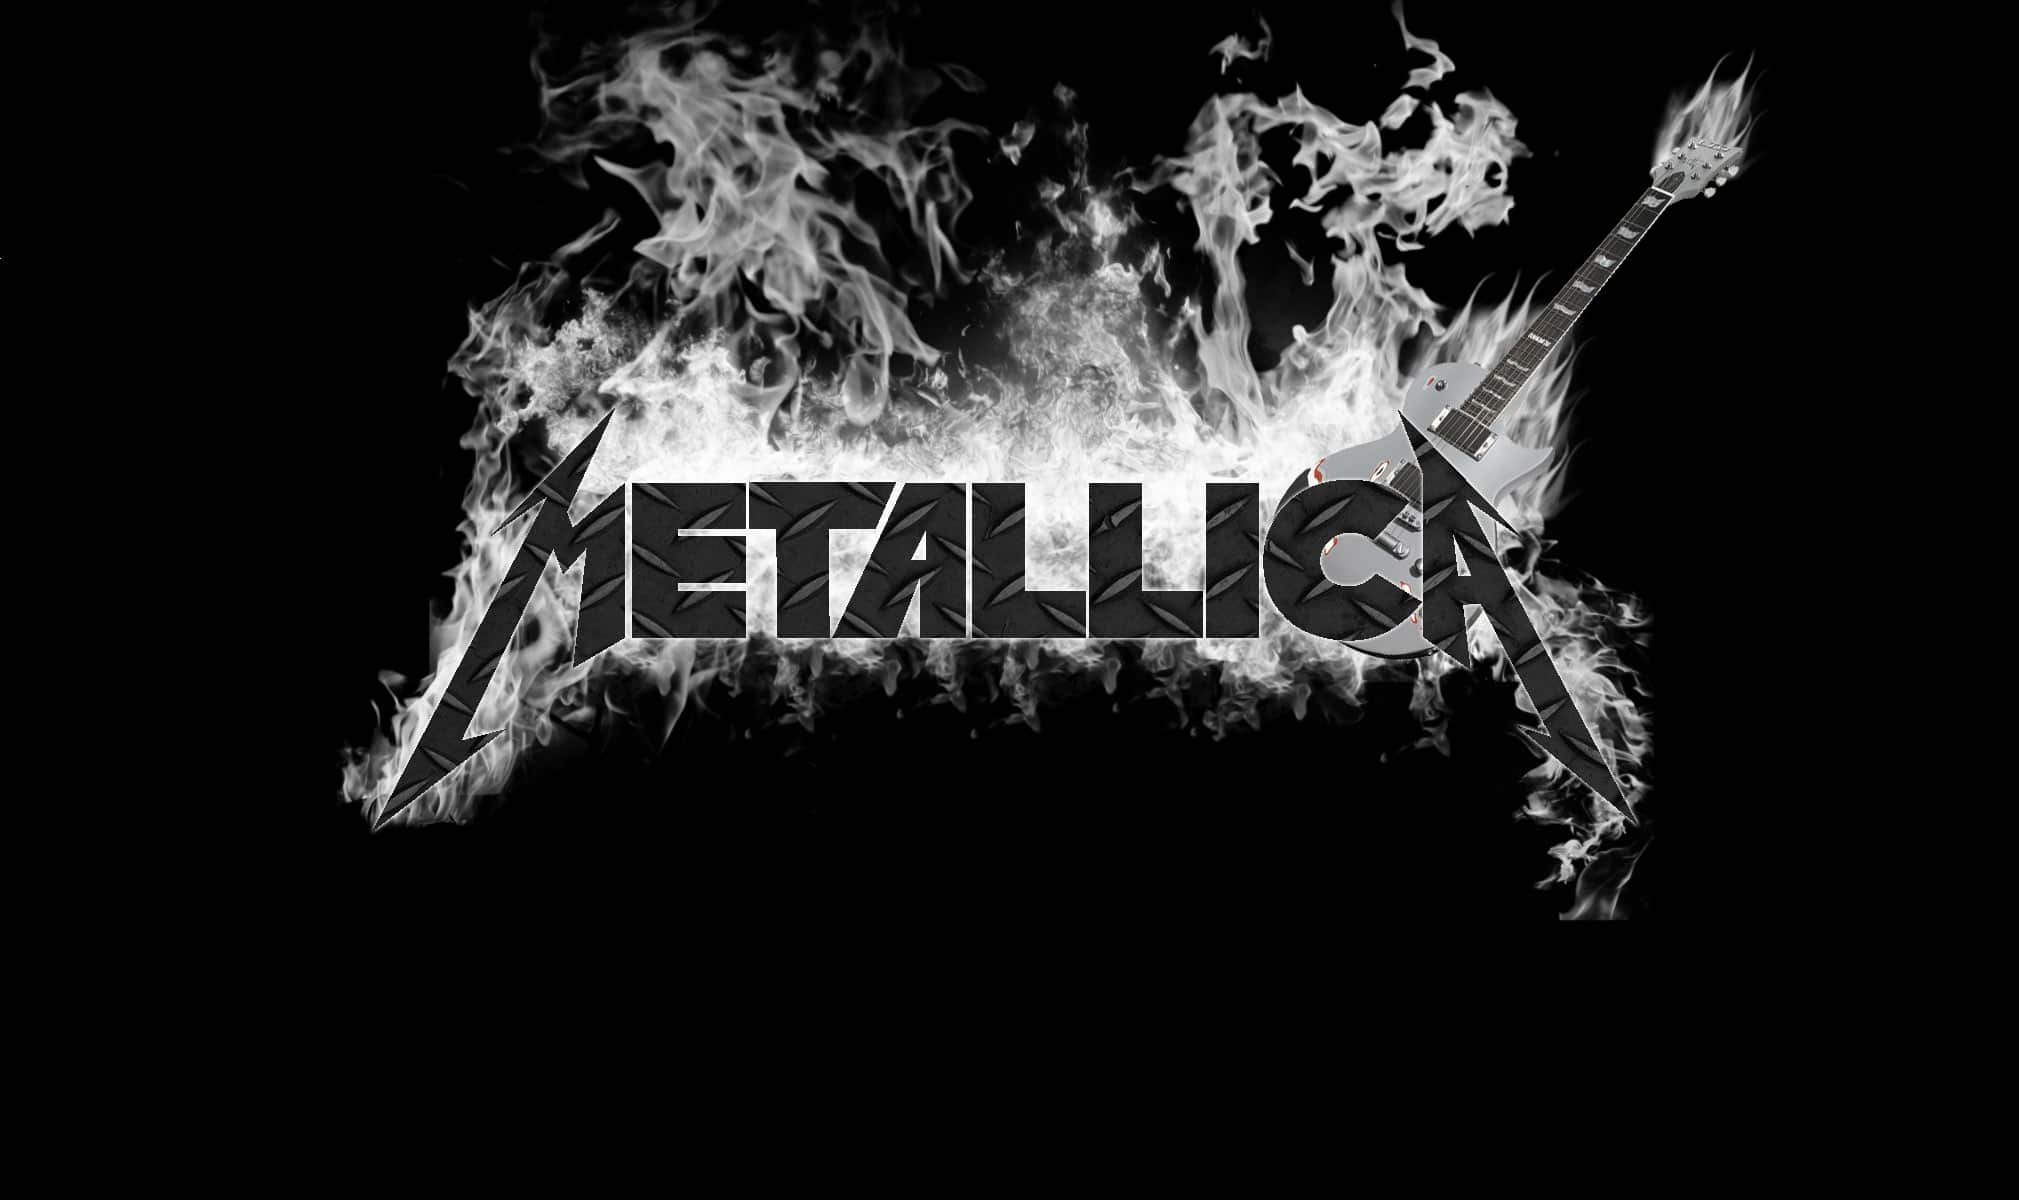 Hd Metallica Wallpaper Download - Metallica Wallpapers High Resolution - HD Wallpaper 